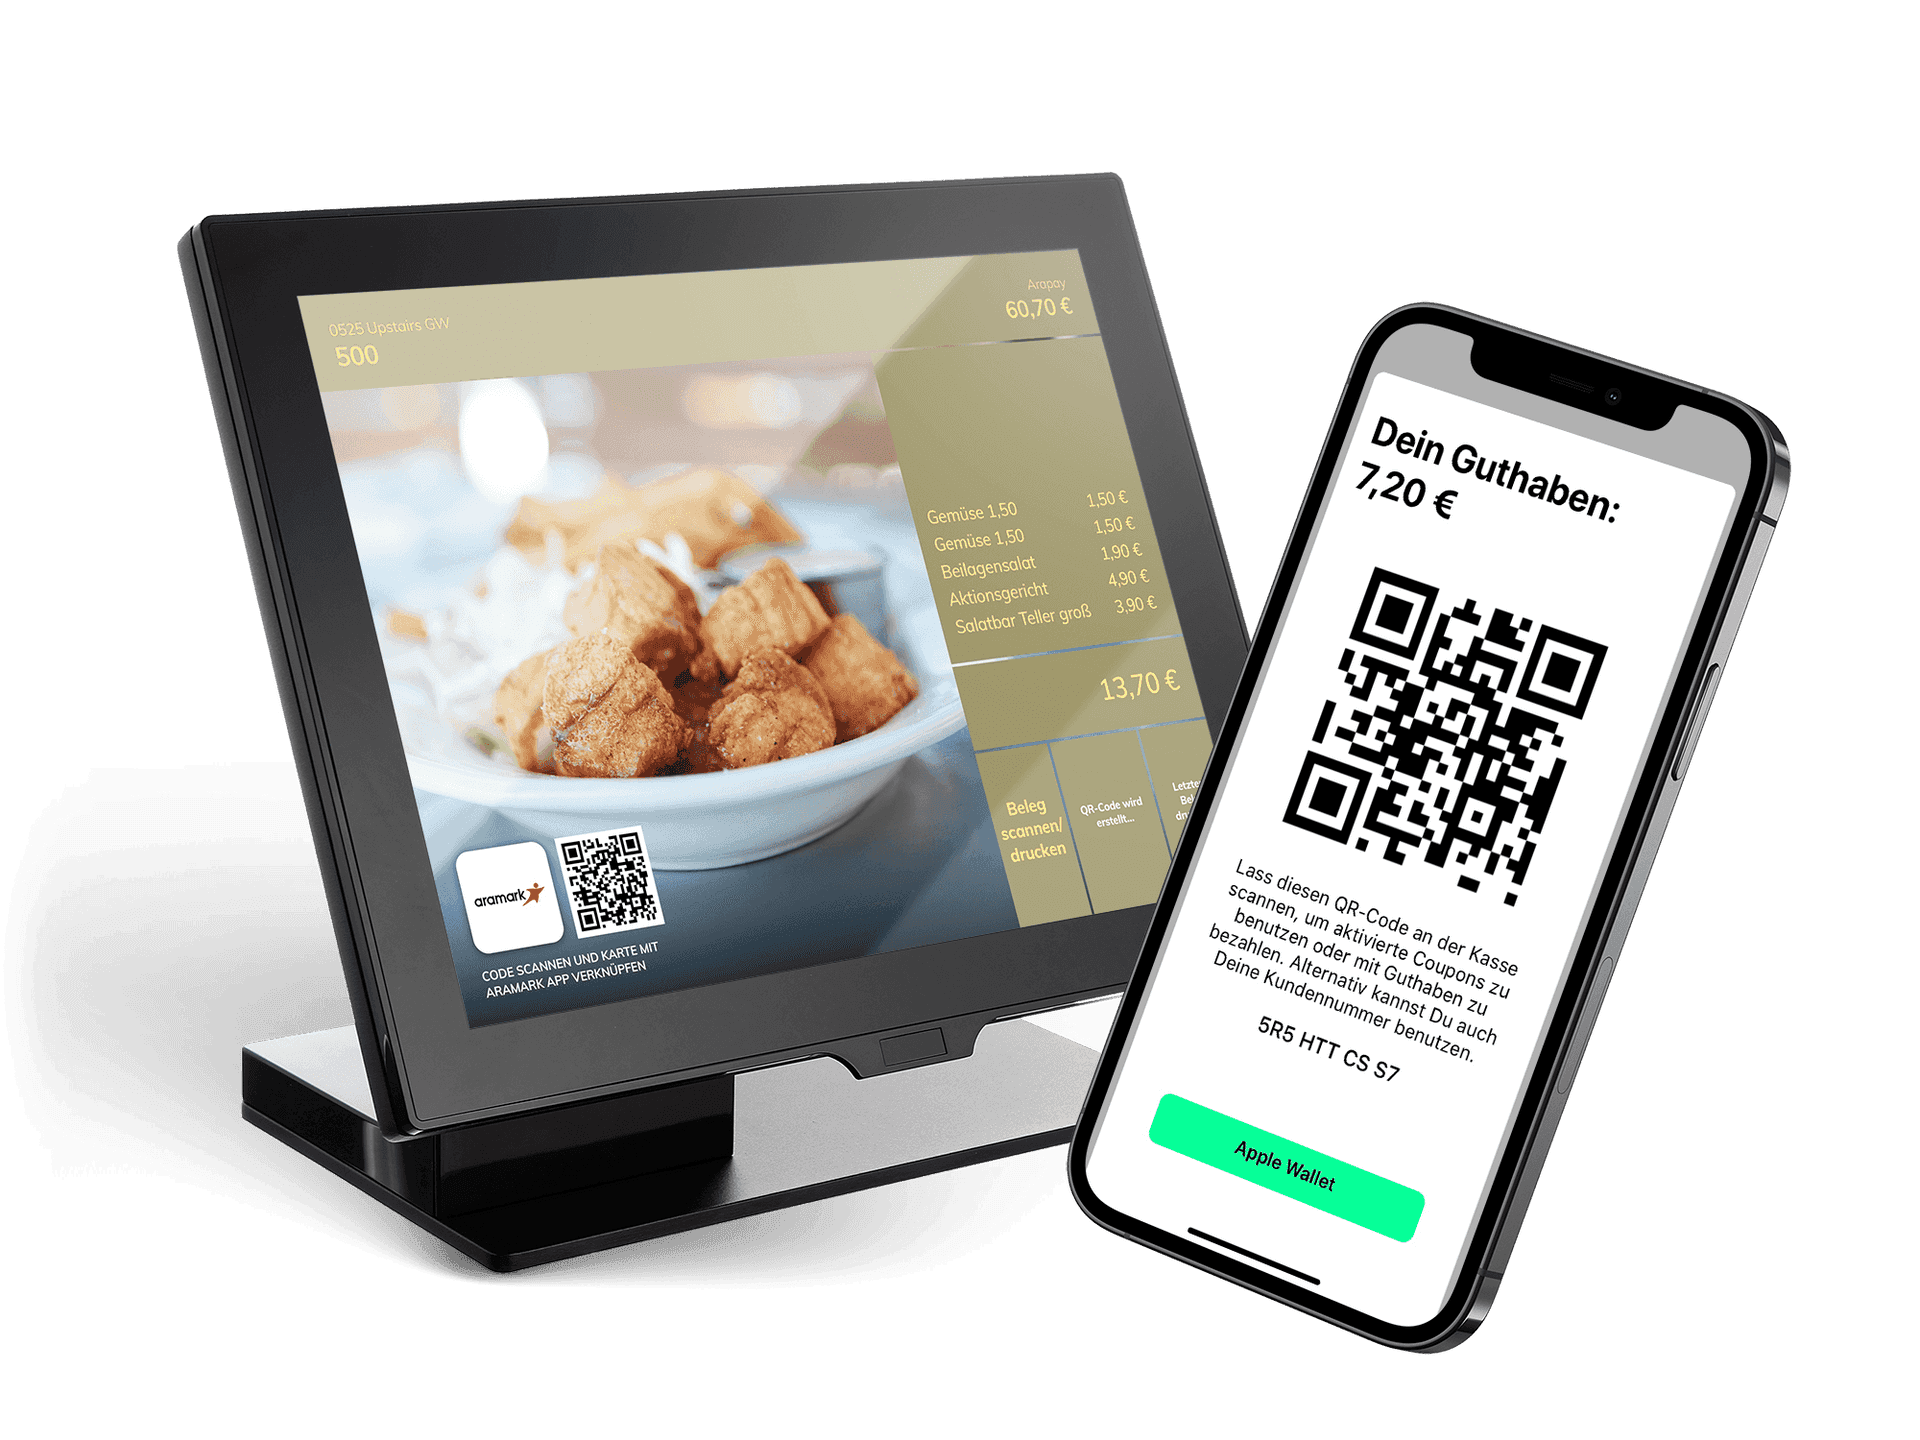 Kassenbildschrim und Handy, Ansicht auf dem Handy von einem QR-Code mit dem Guthaben in dem Catering Portal, auf dem Kassenbildschirm der Inhalt des Warenkorbs mit den bestellten Artikeln